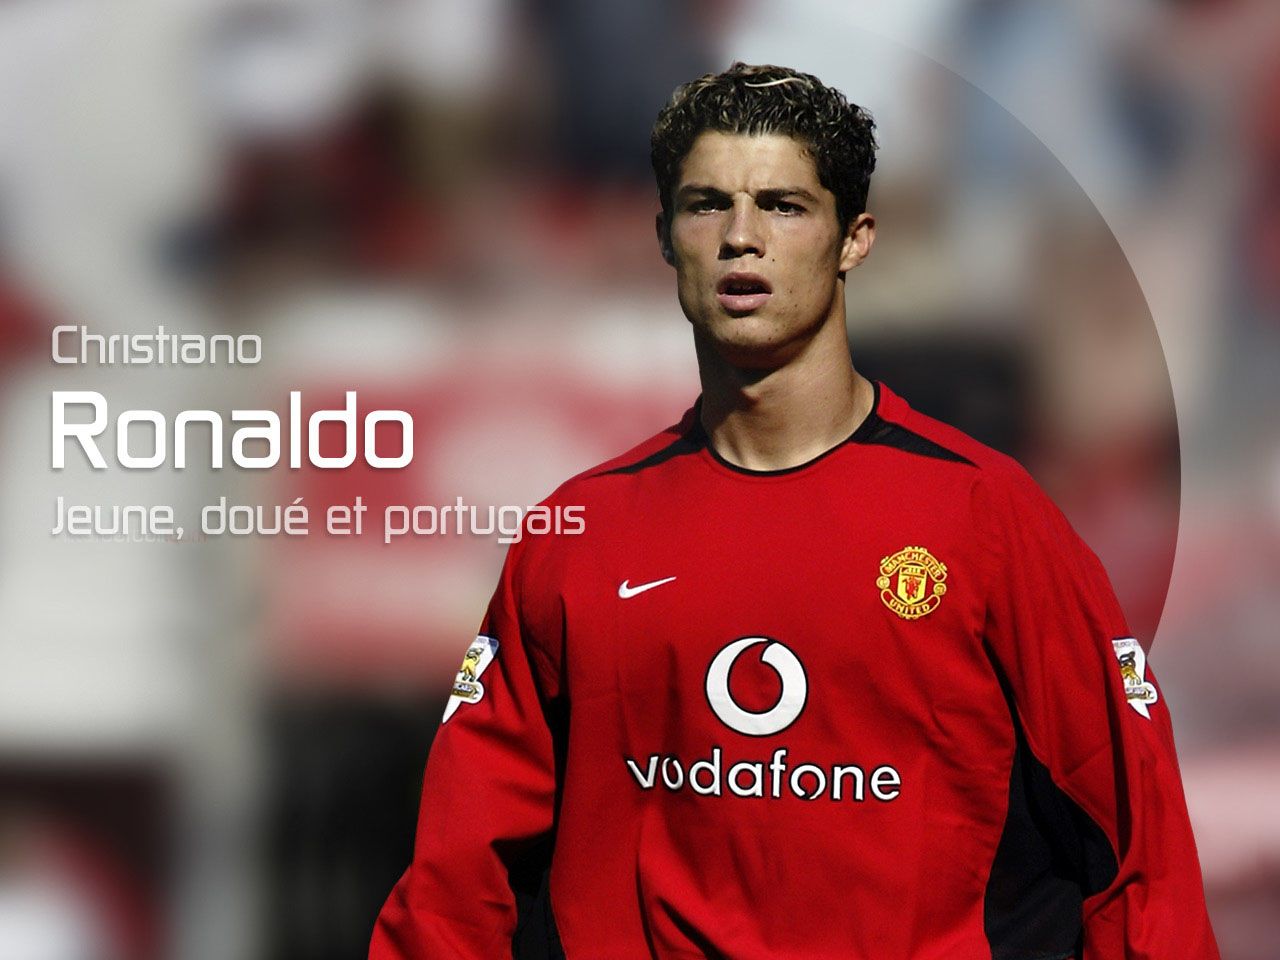 Cristiano ronaldo: Cristiano ronaldo manchester united HD wallpaper